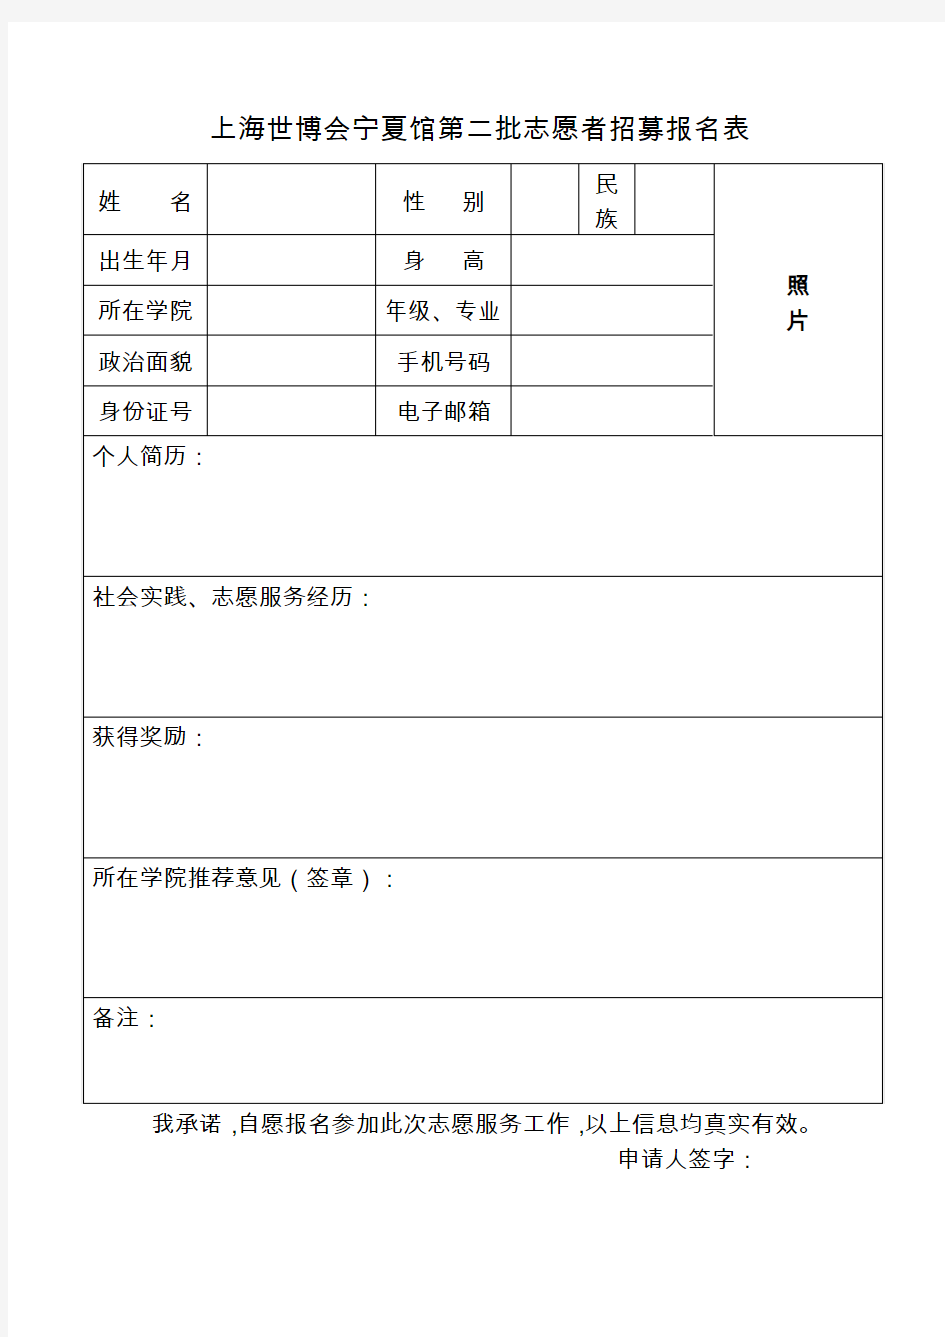 上海世博会宁夏馆第二批志愿者招募报名表